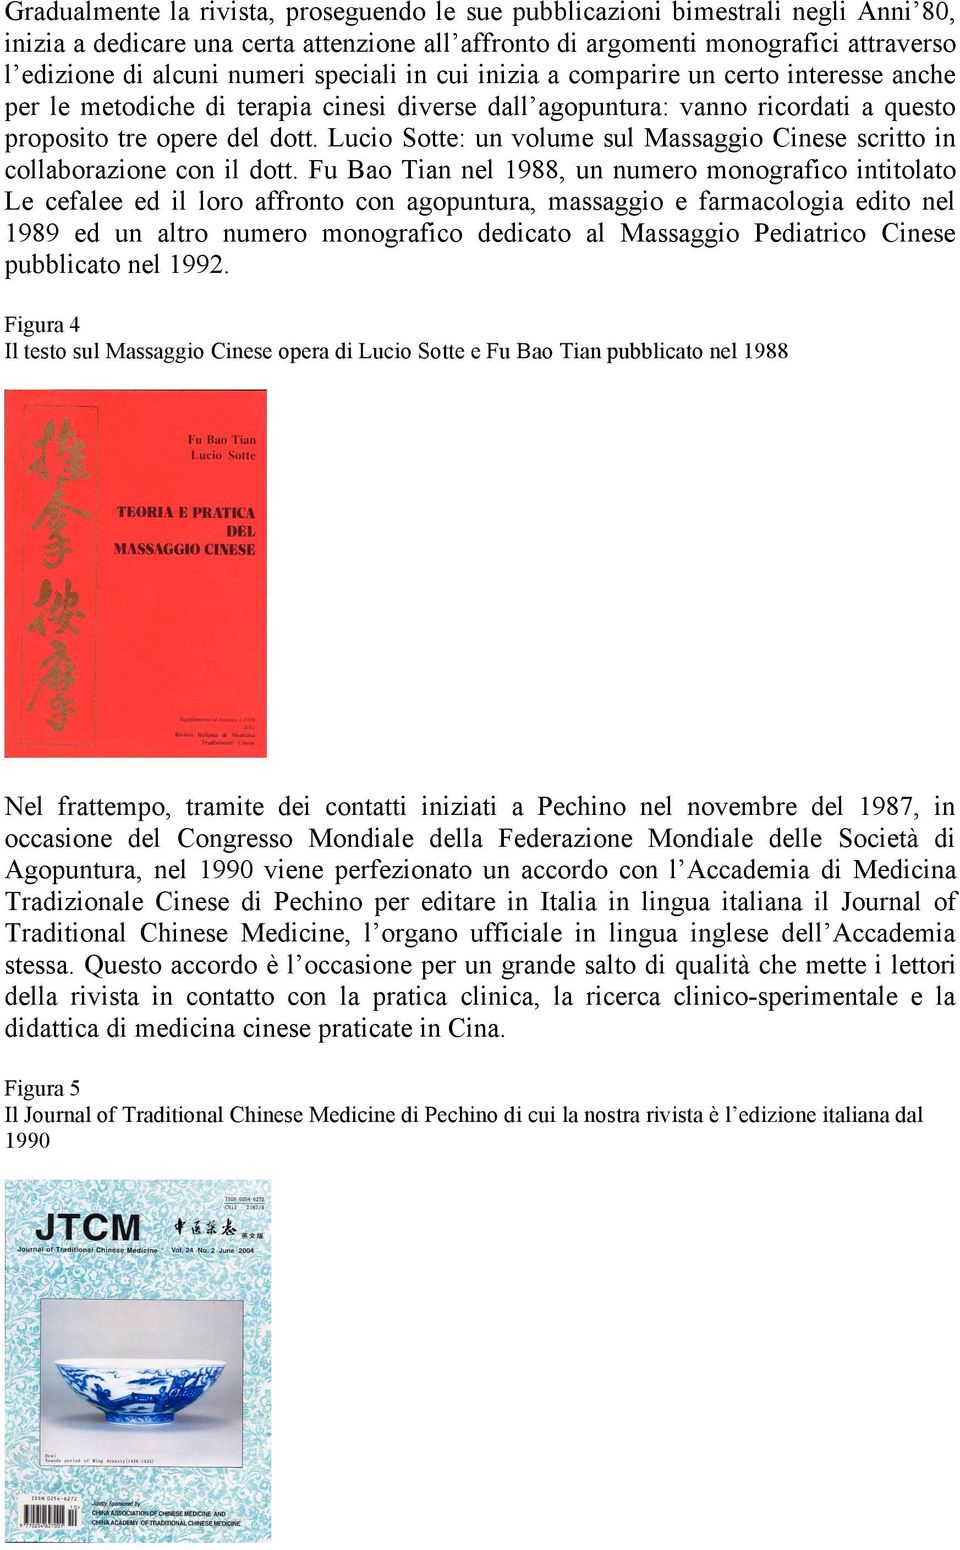 Lucio Sotte: un volume sul Massaggio Cinese scritto in collaborazione con il dott.